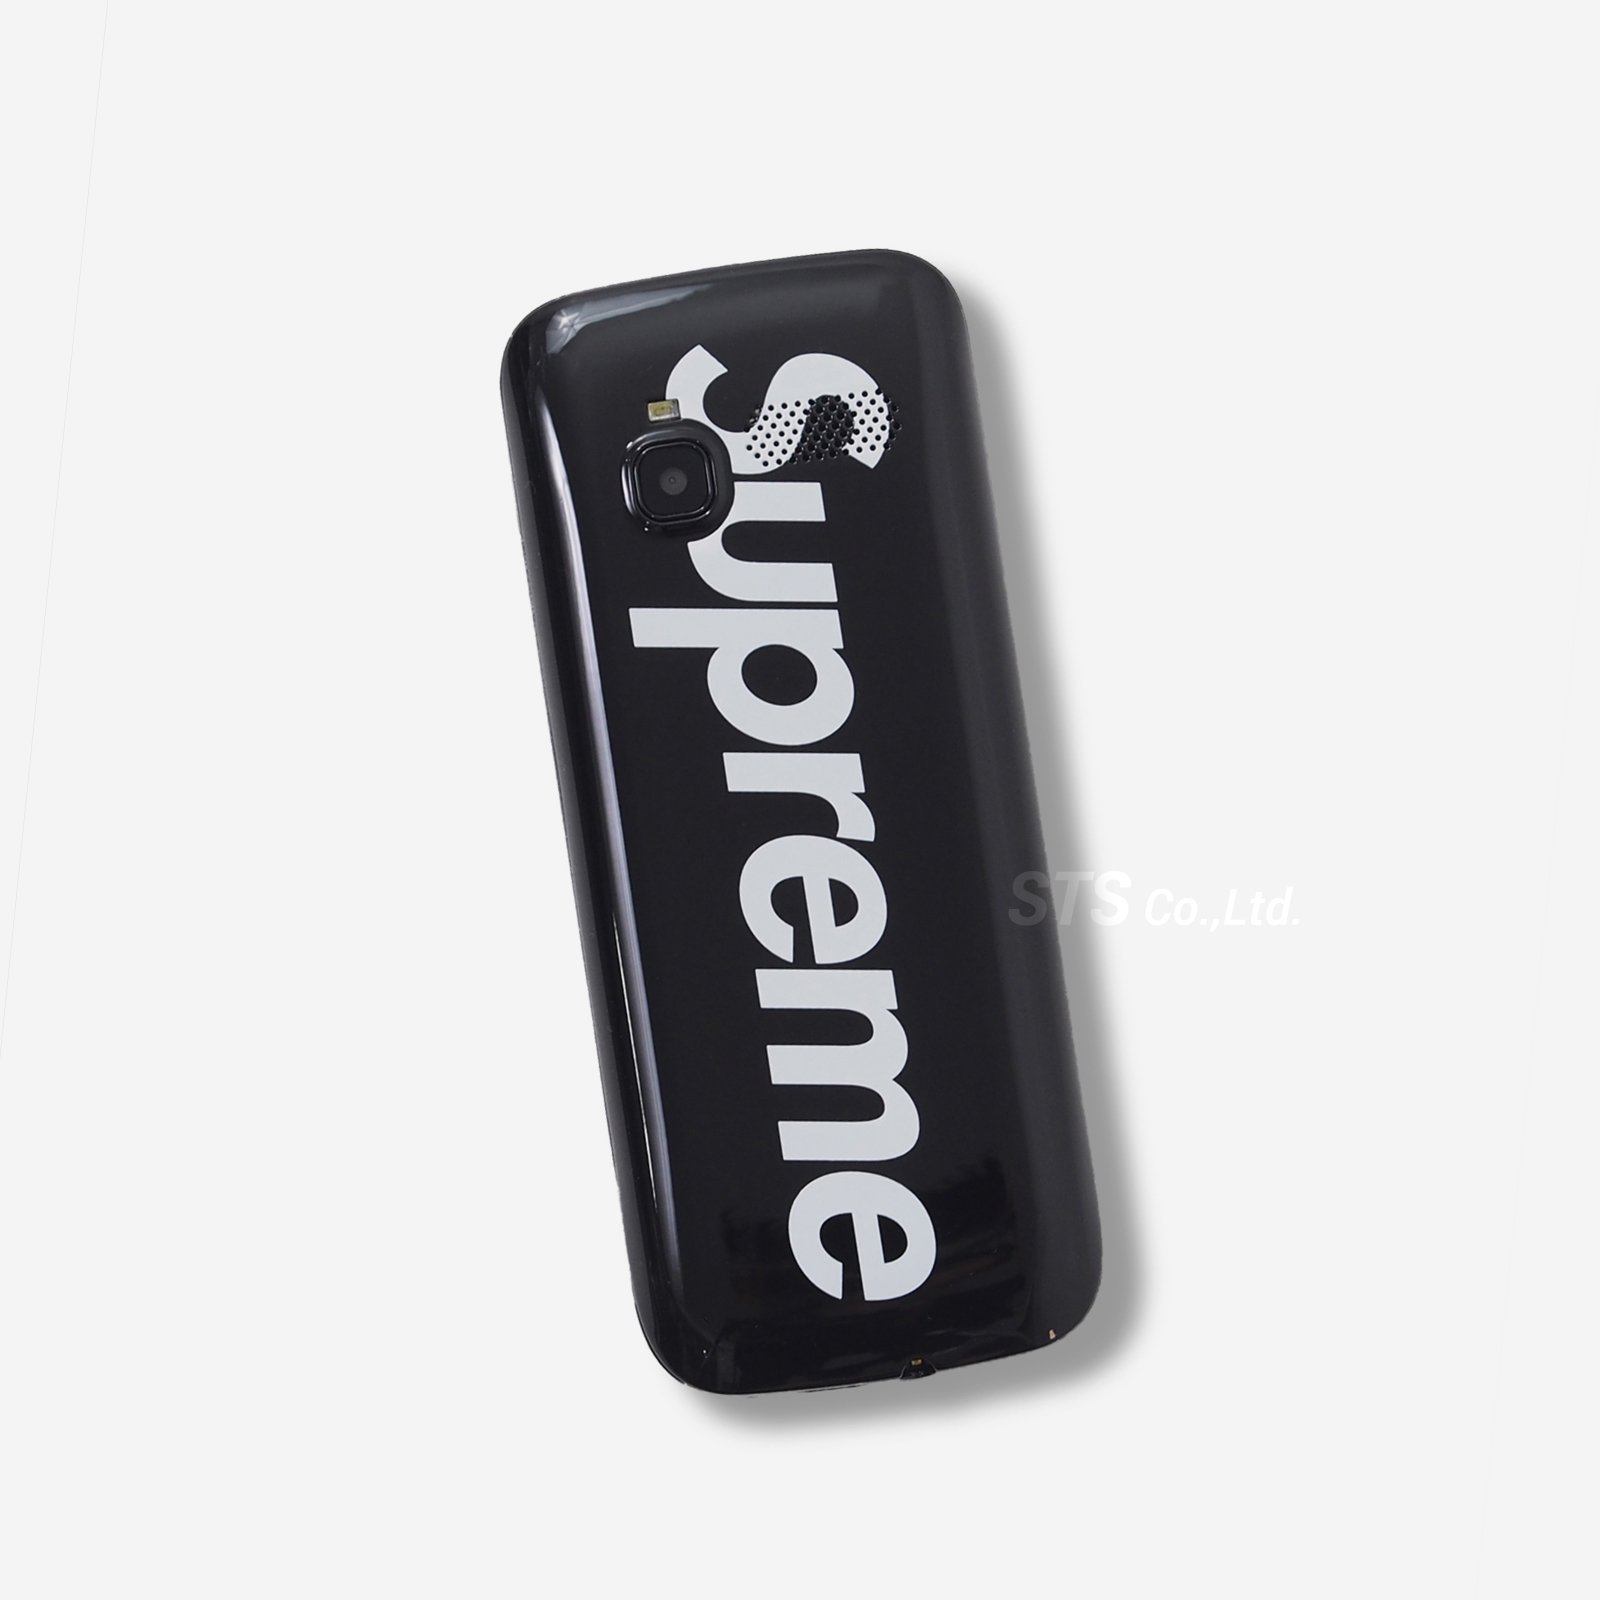 Supreme/BLU Burner Phone - ParkSIDER